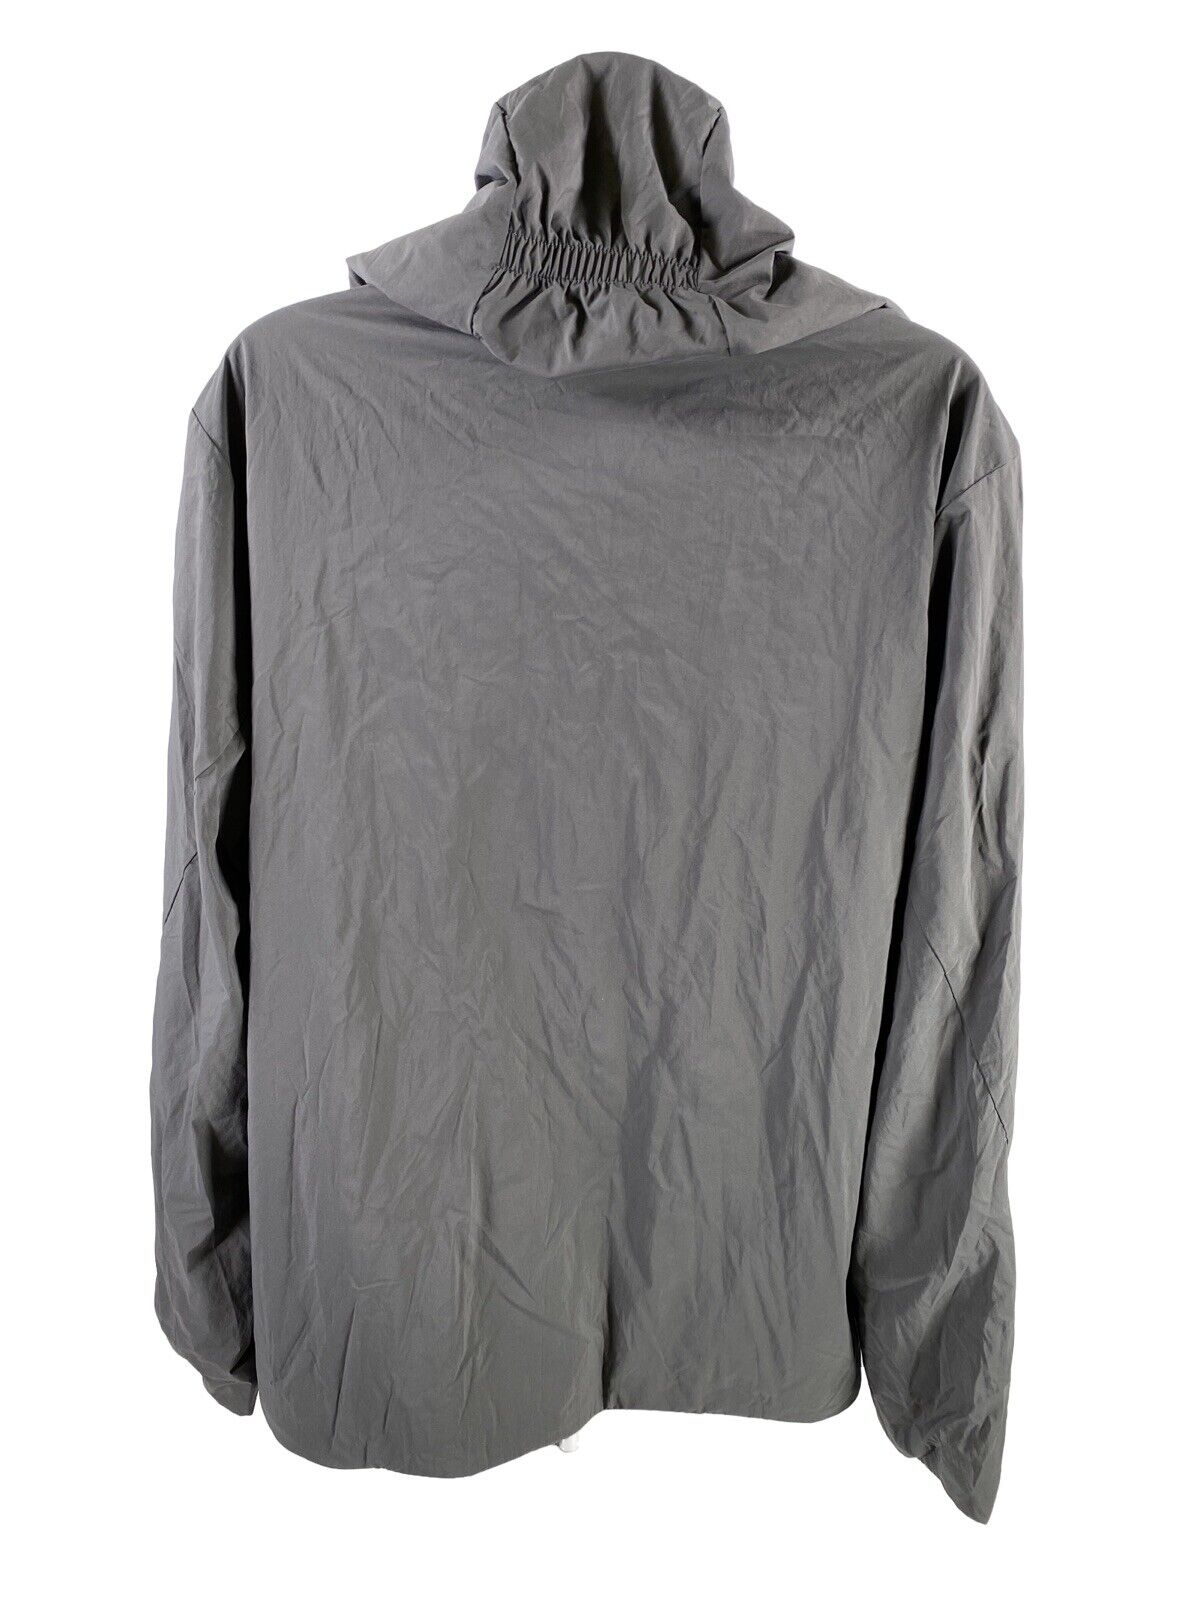 NUEVA chaqueta cortavientos con capucha Tropos gris Icebreaker para mujer - XL